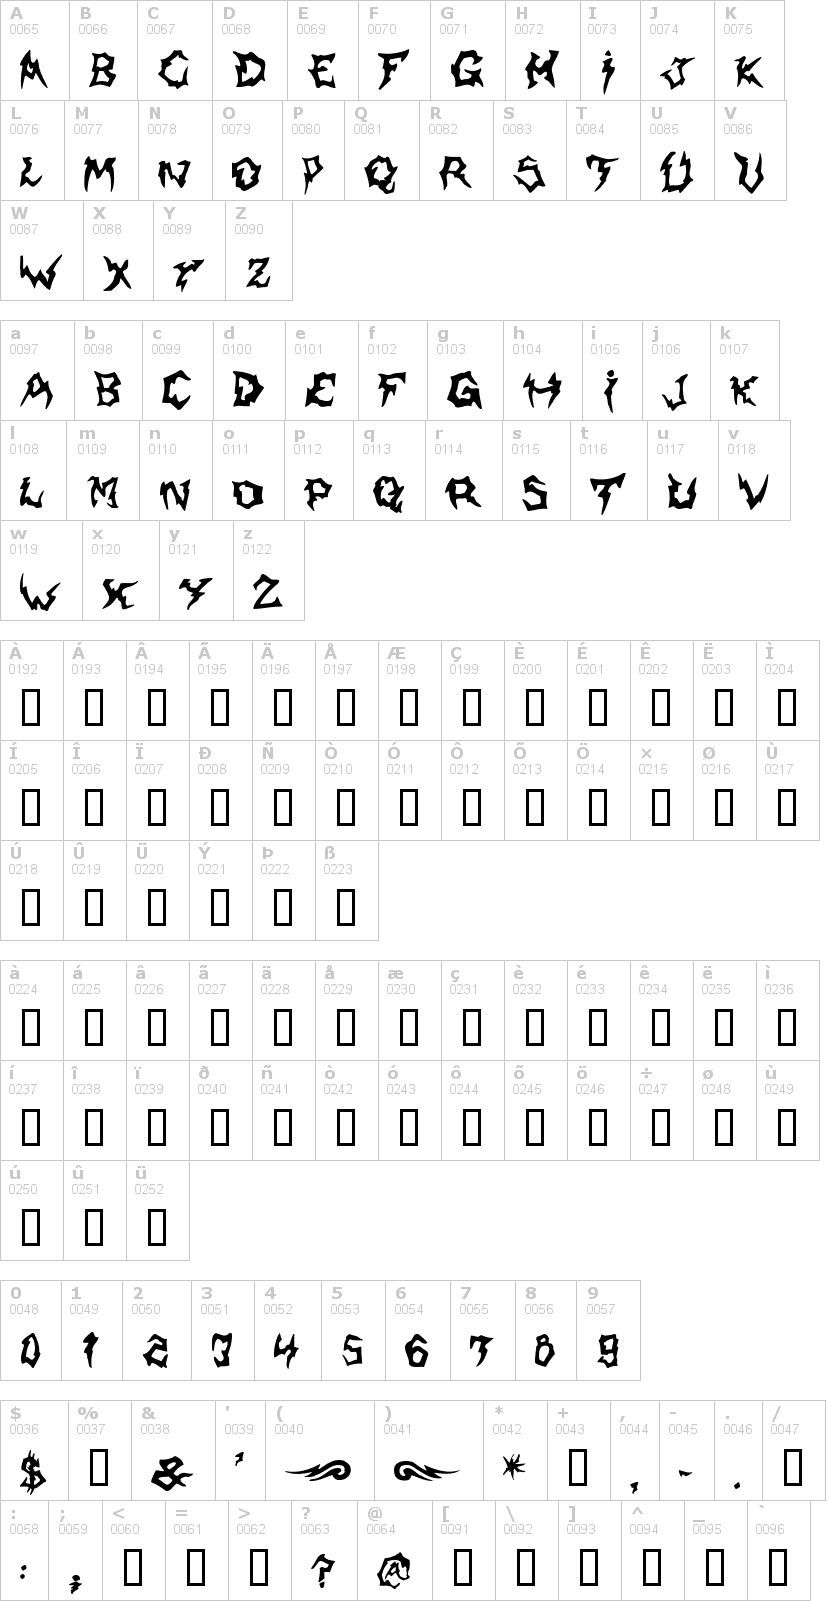 Lettere dell'alfabeto del font shaman con le quali è possibile realizzare adesivi prespaziati